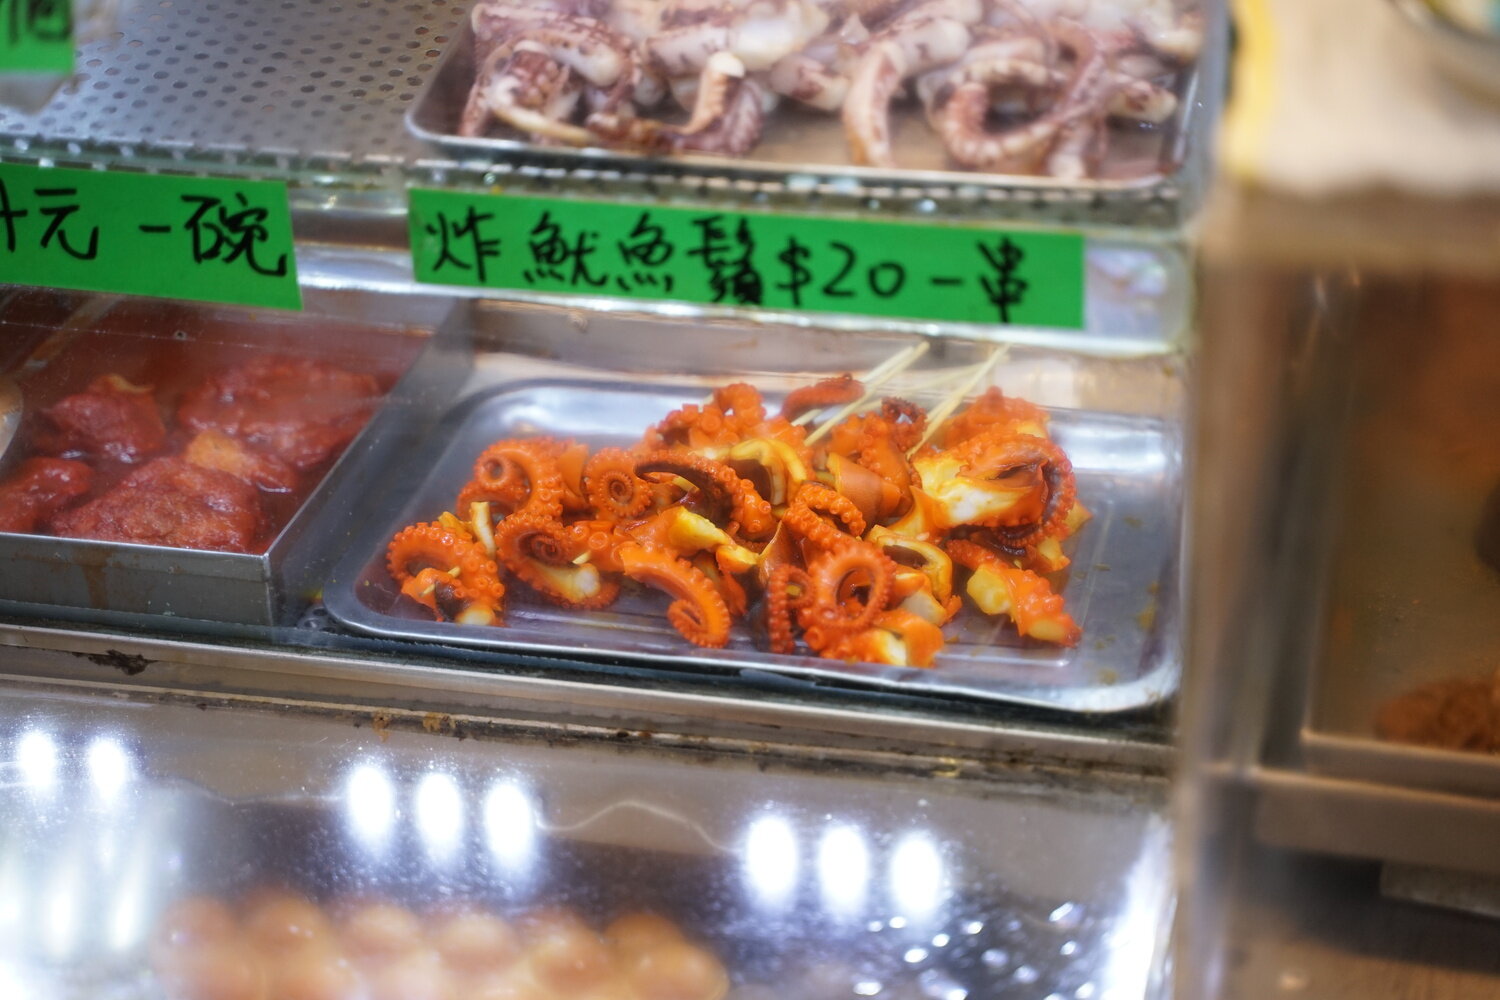 Squid tentacle street food in Hong Kong.